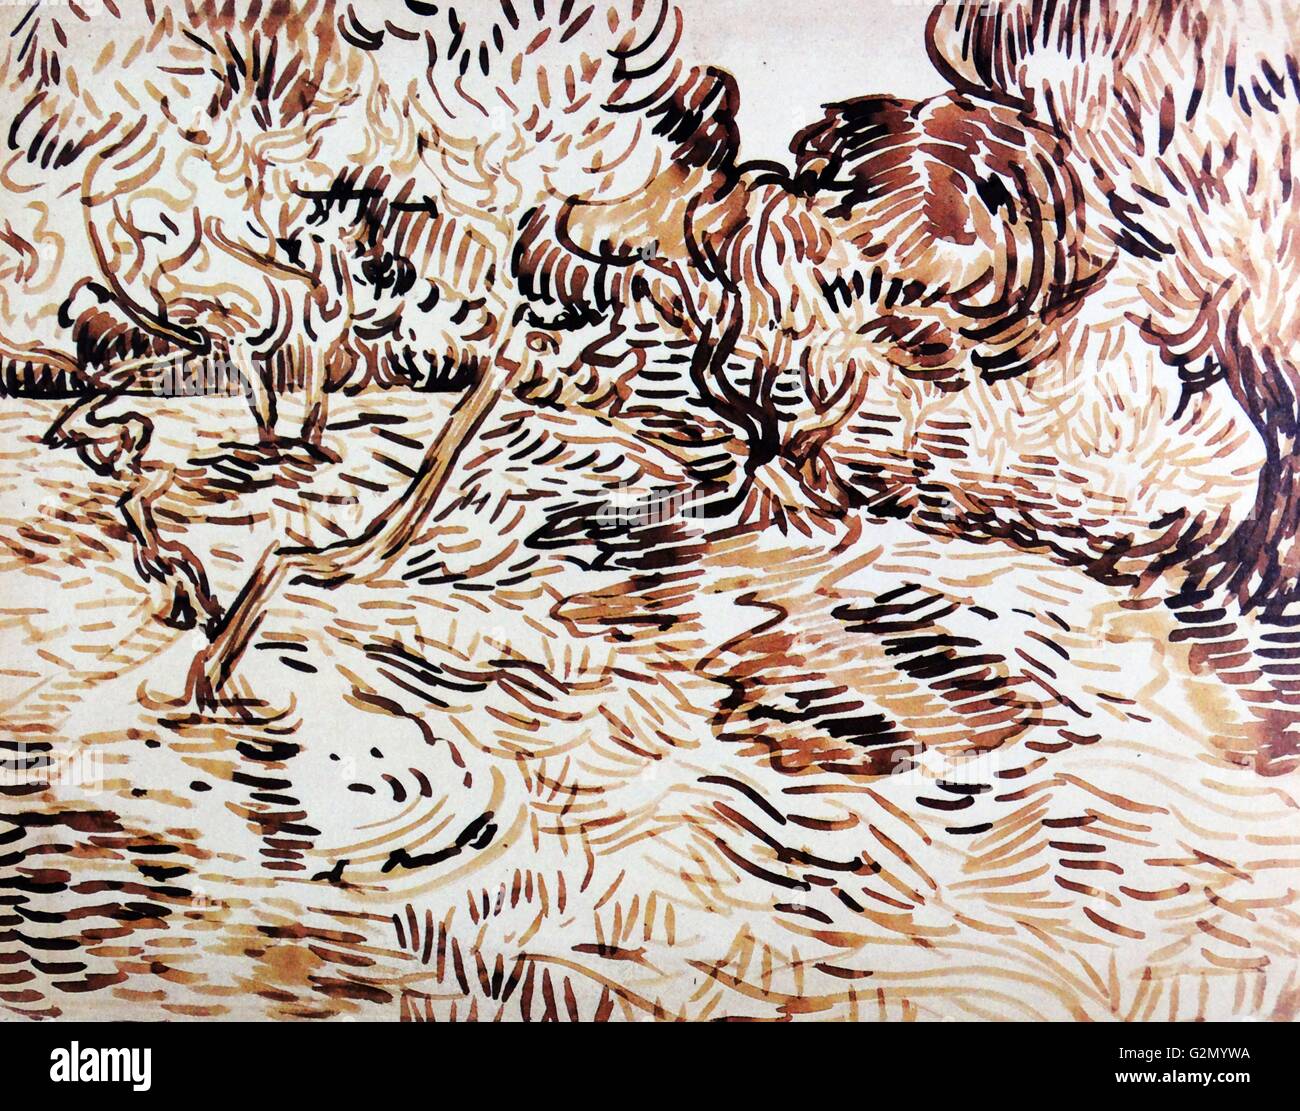 Pintada por el famoso artista holandés Vincent Van Gogh (30 de marzo de 1853 - 29 de julio de 1890), el trabajo titulado 'Los Olivos'. Terminado en 1889. Foto de stock